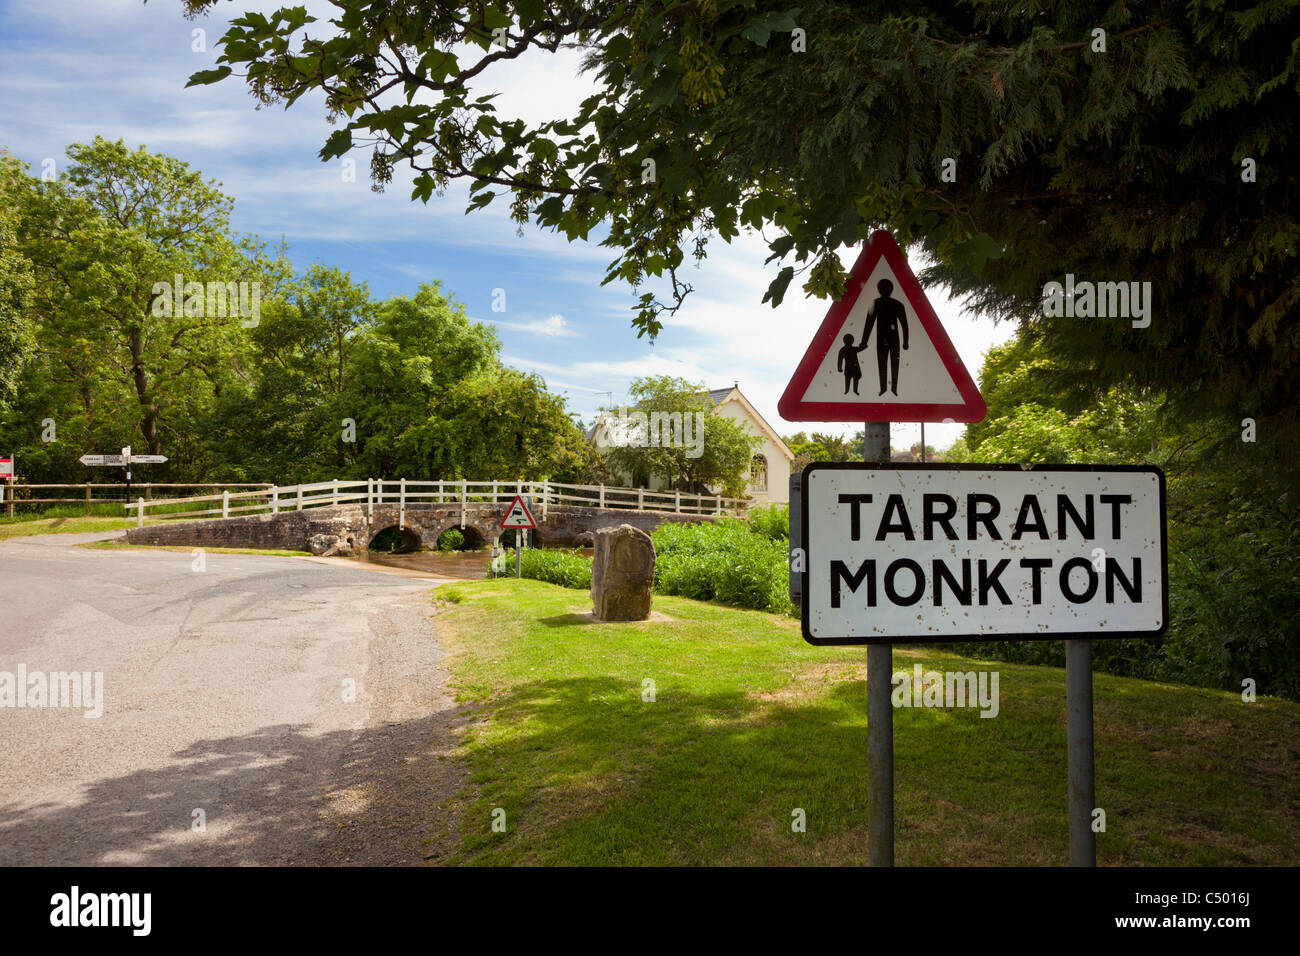 Monkton Tarrant panneau du village et Ford, Dorset, England, UK Banque D'Images